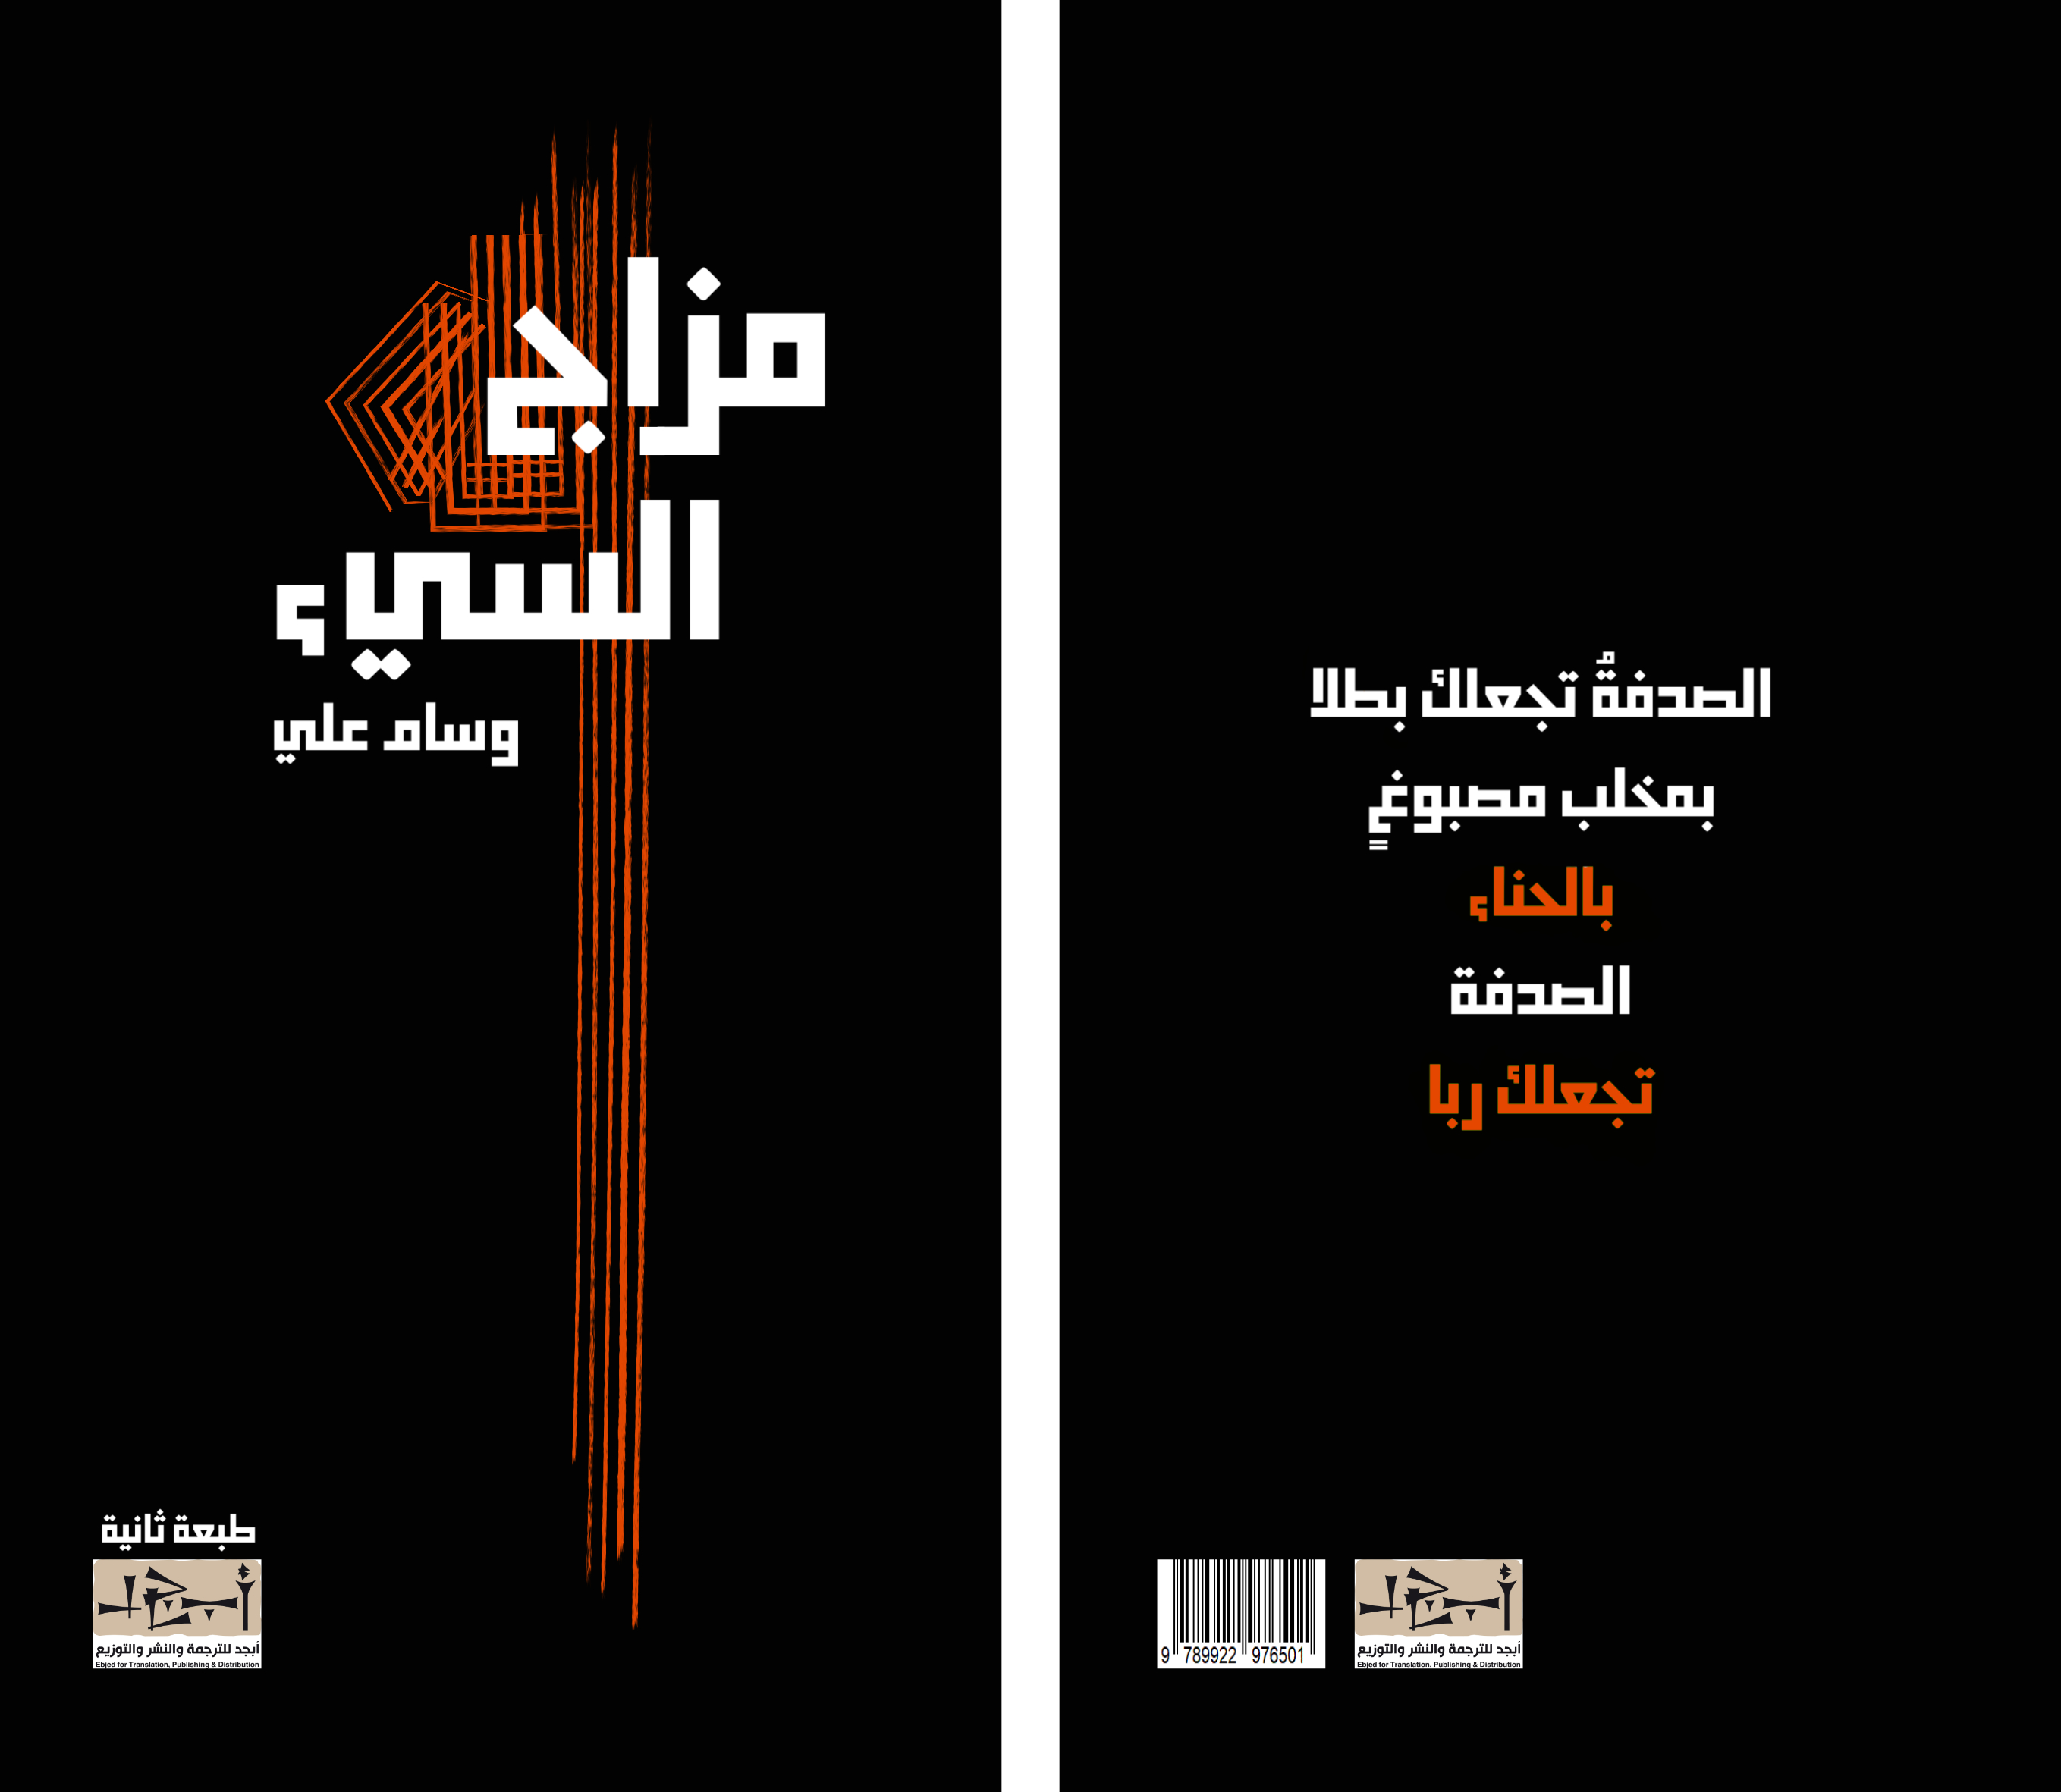 اسم الكتاب: مزاج الشيء تأليف: وسام علي